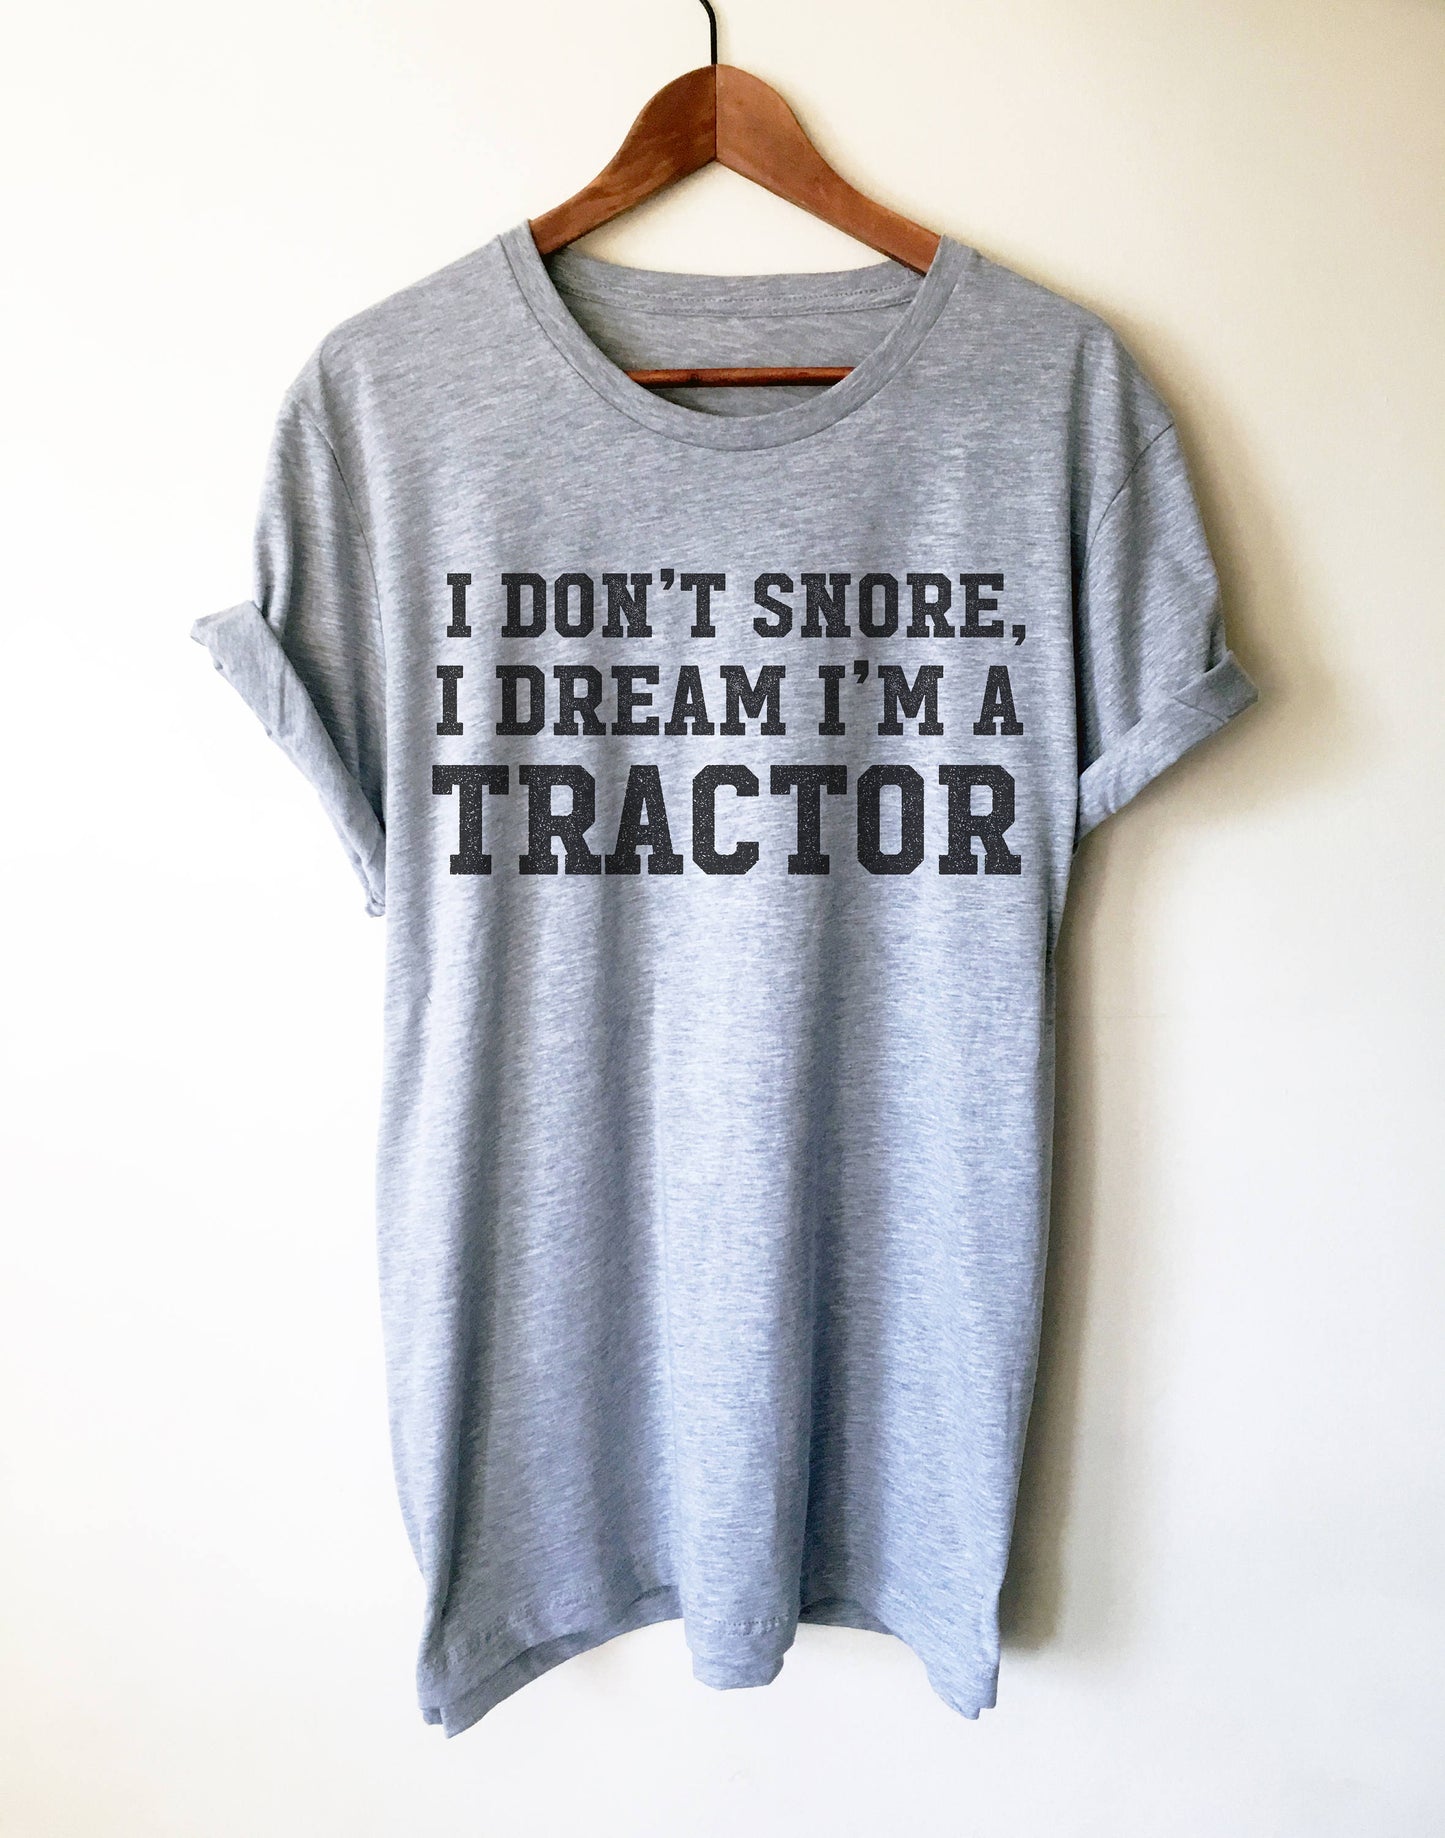 I Don't Snore I Dream I'm A Tractor Unisex Shirt - Snore shirt, Tractor Shirt, Farmer shirt, Funny snore, Farm, Farmer, Funny farming